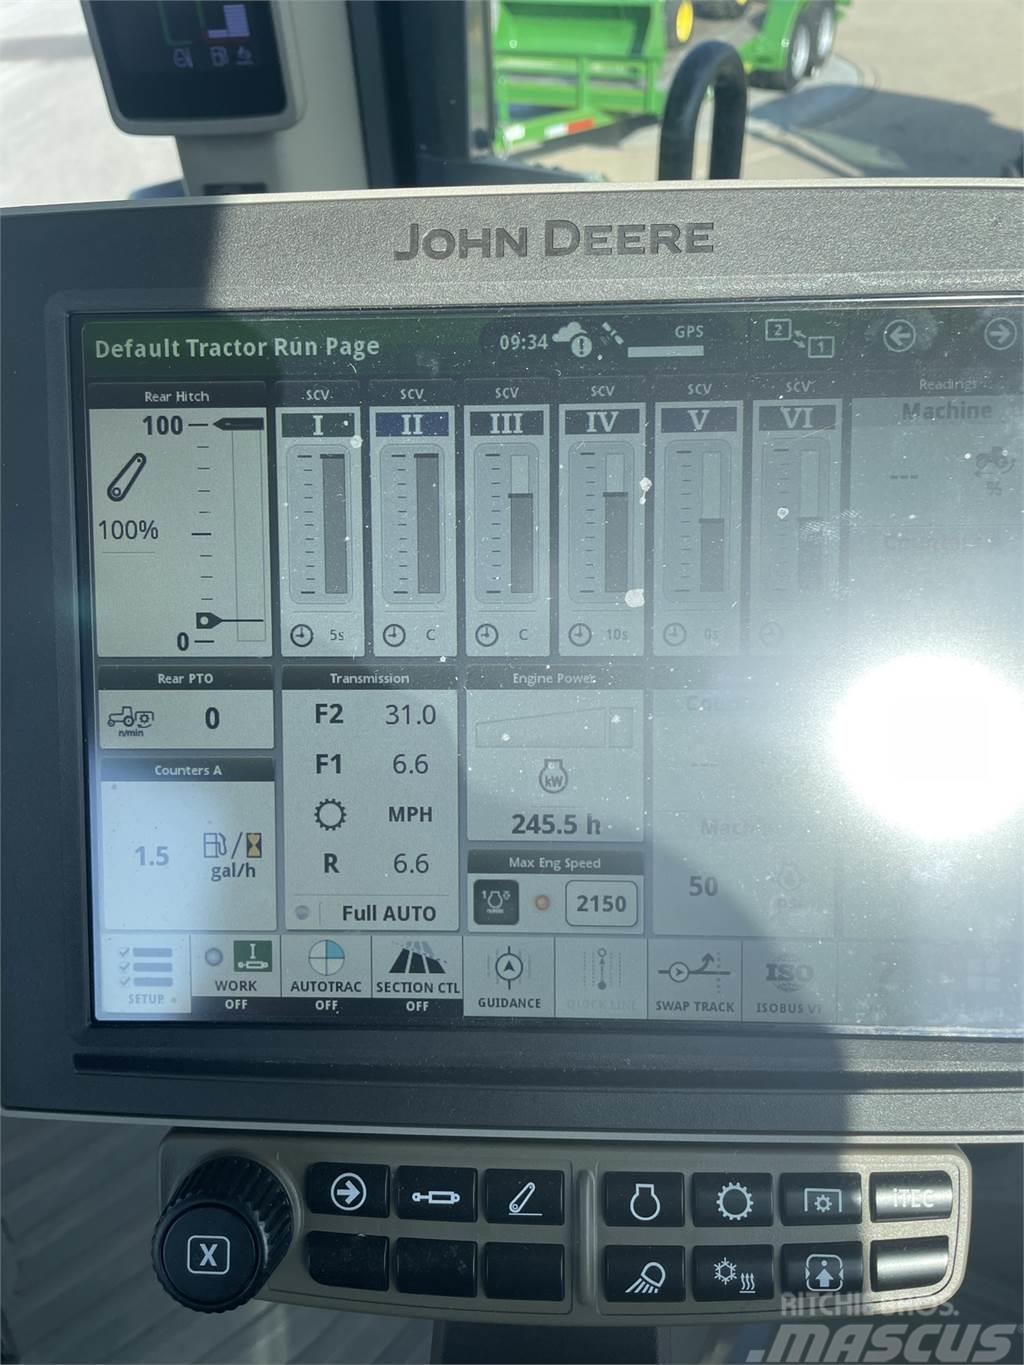 John Deere 8R 340 Traktörler